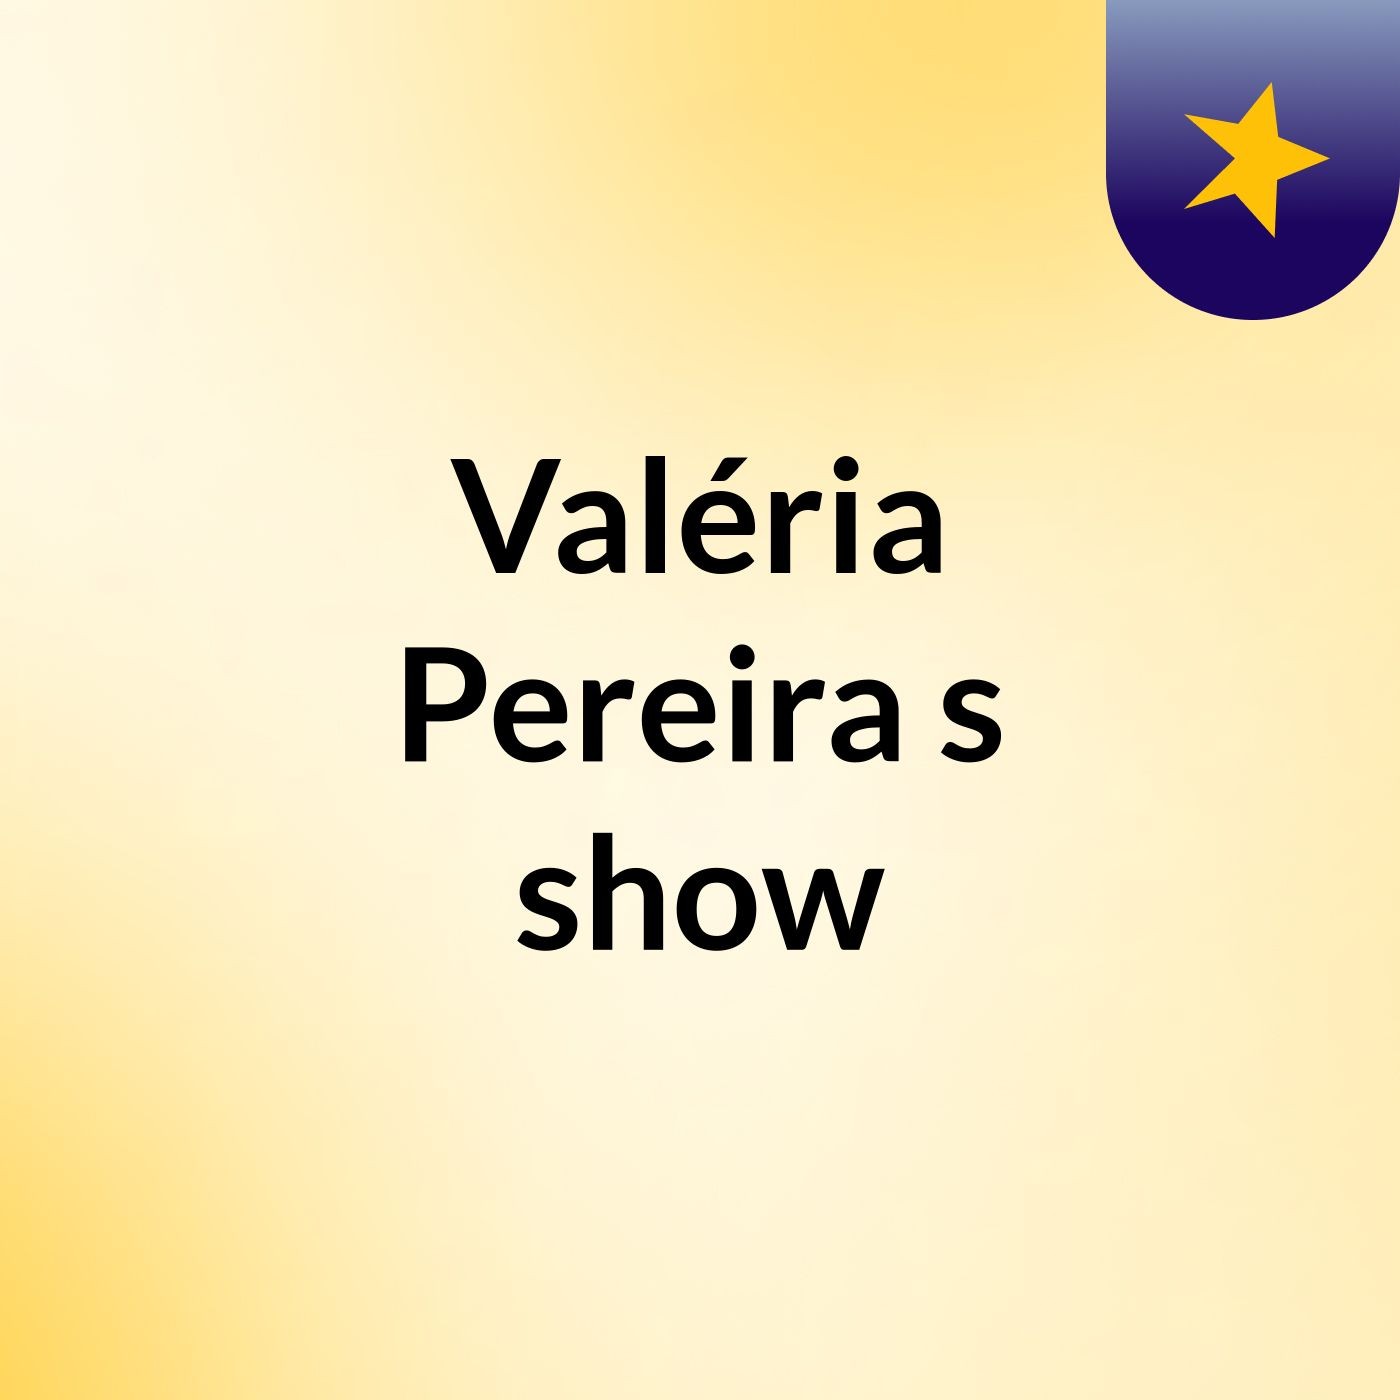 Valéria Pereira's show